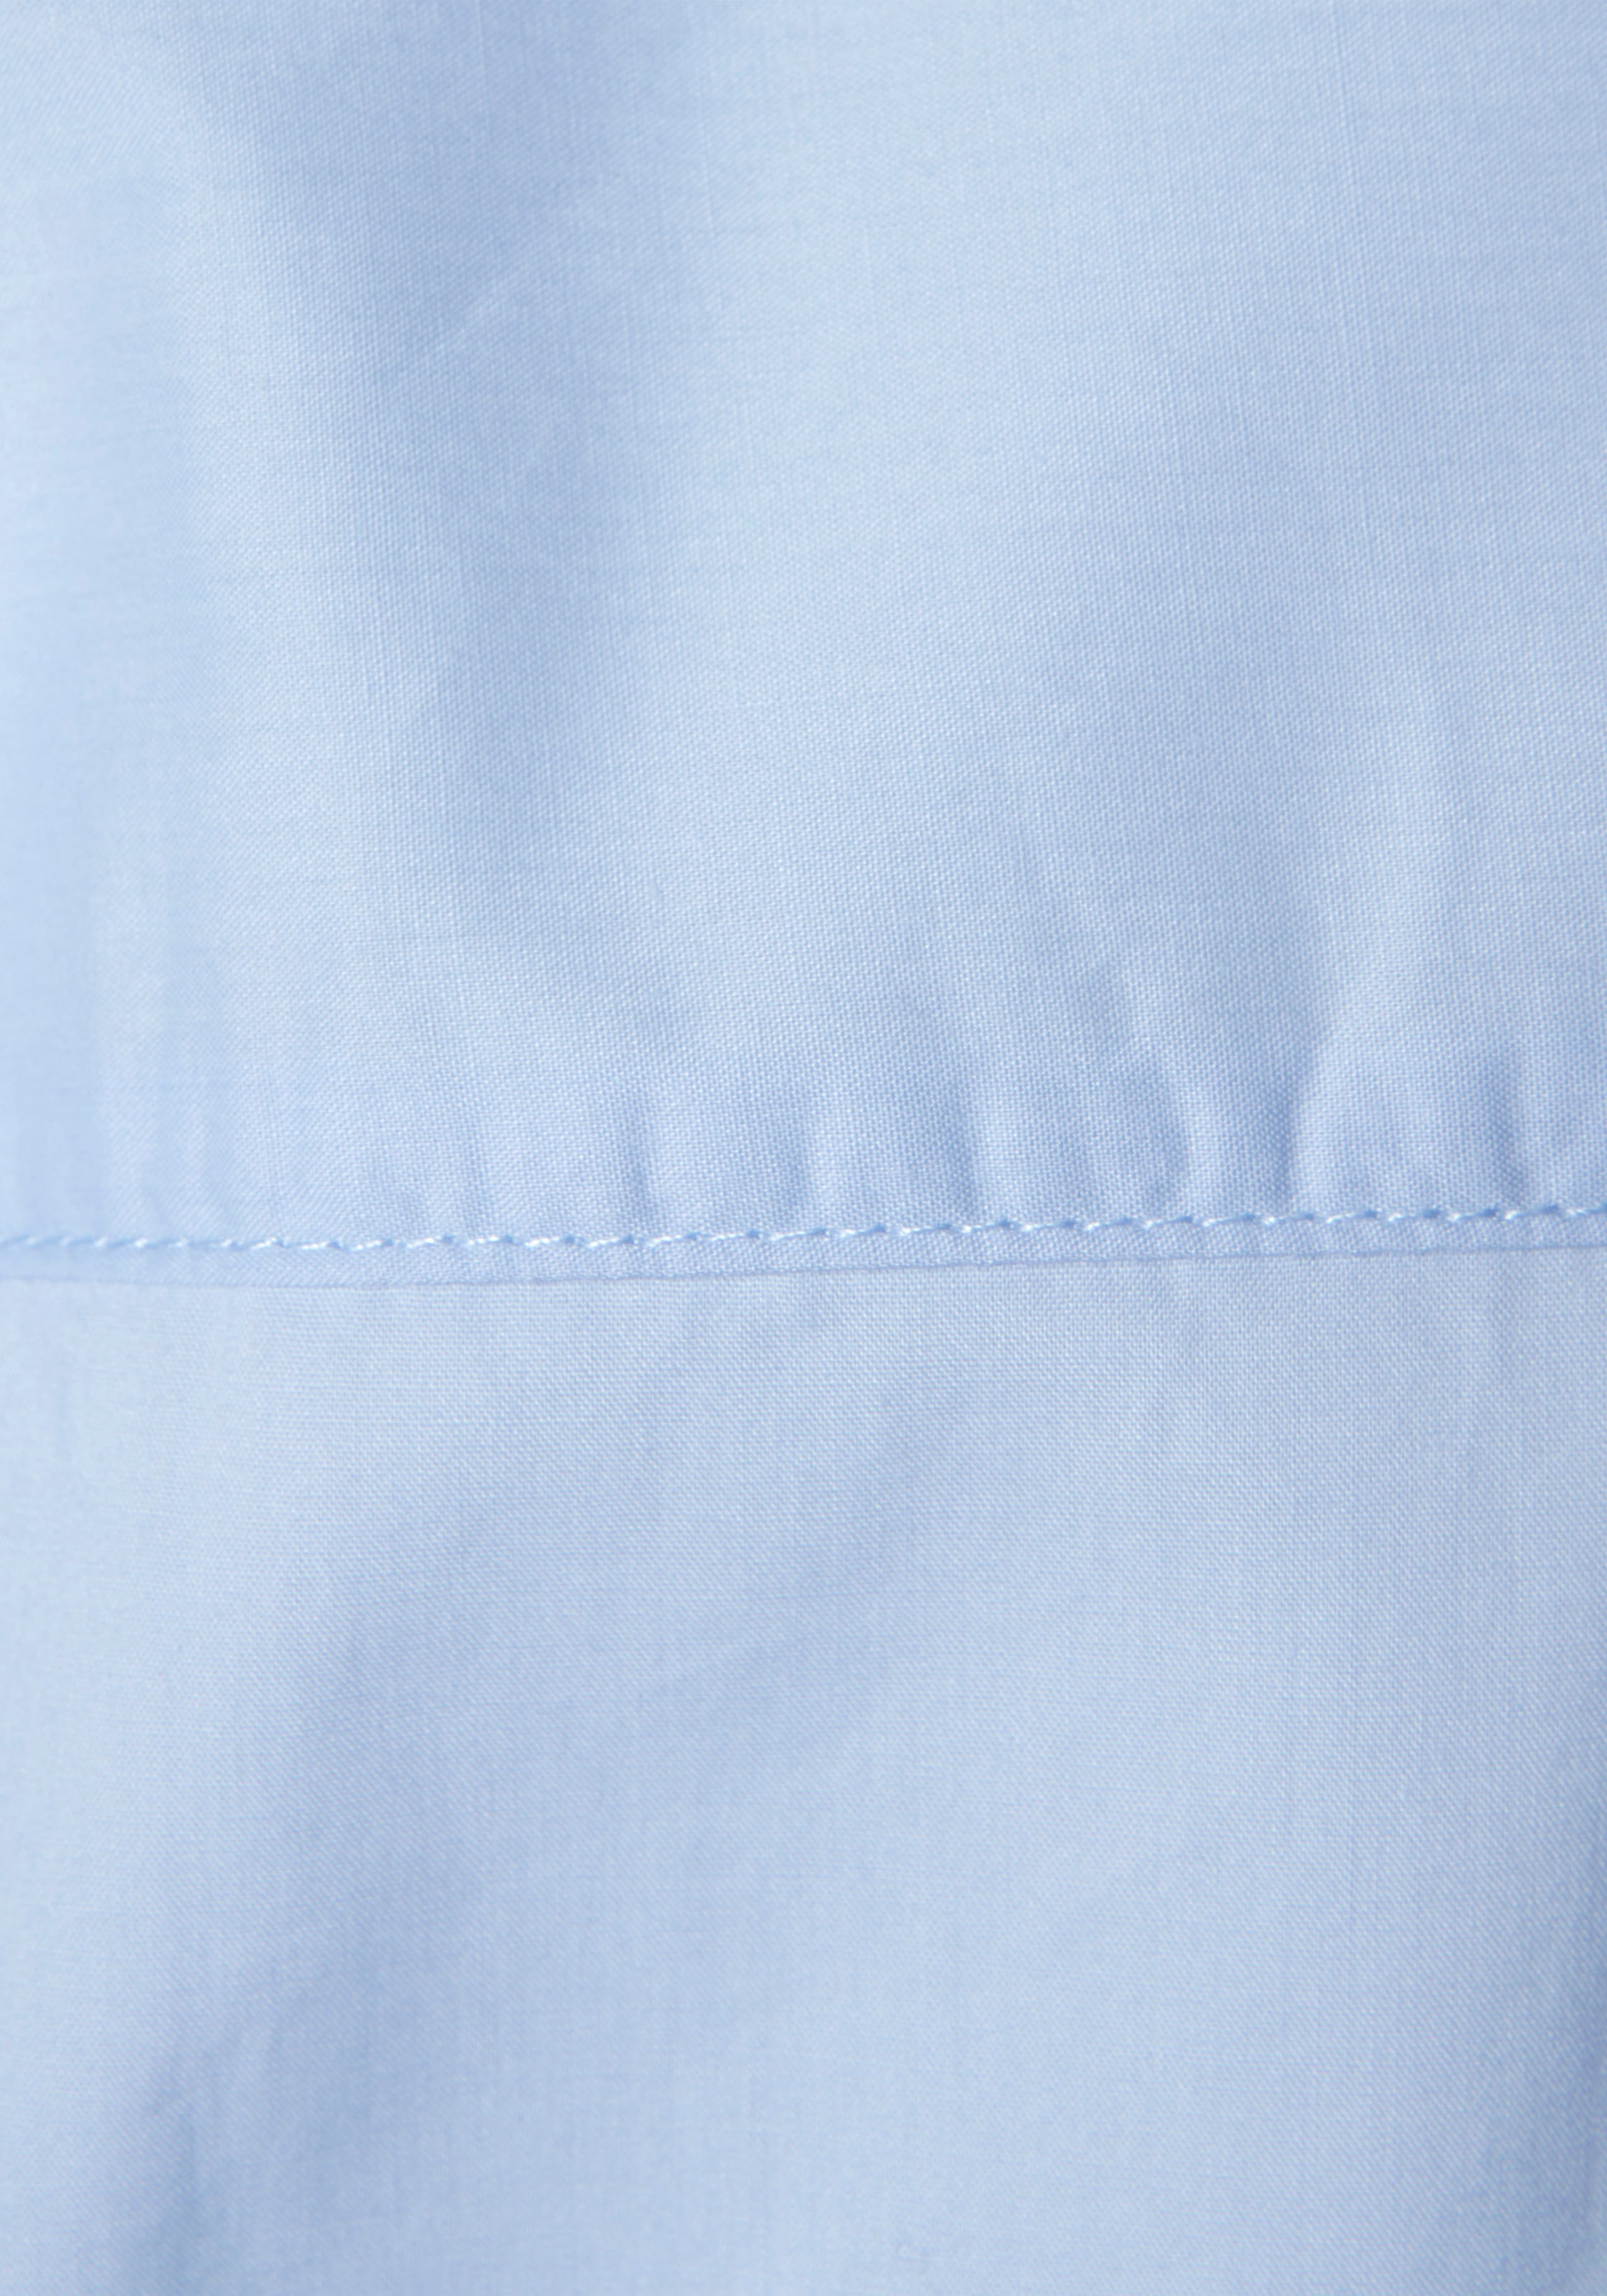 LASCANA Hemdbluse, hinten länger geschnitten im Online-Shop bestellen